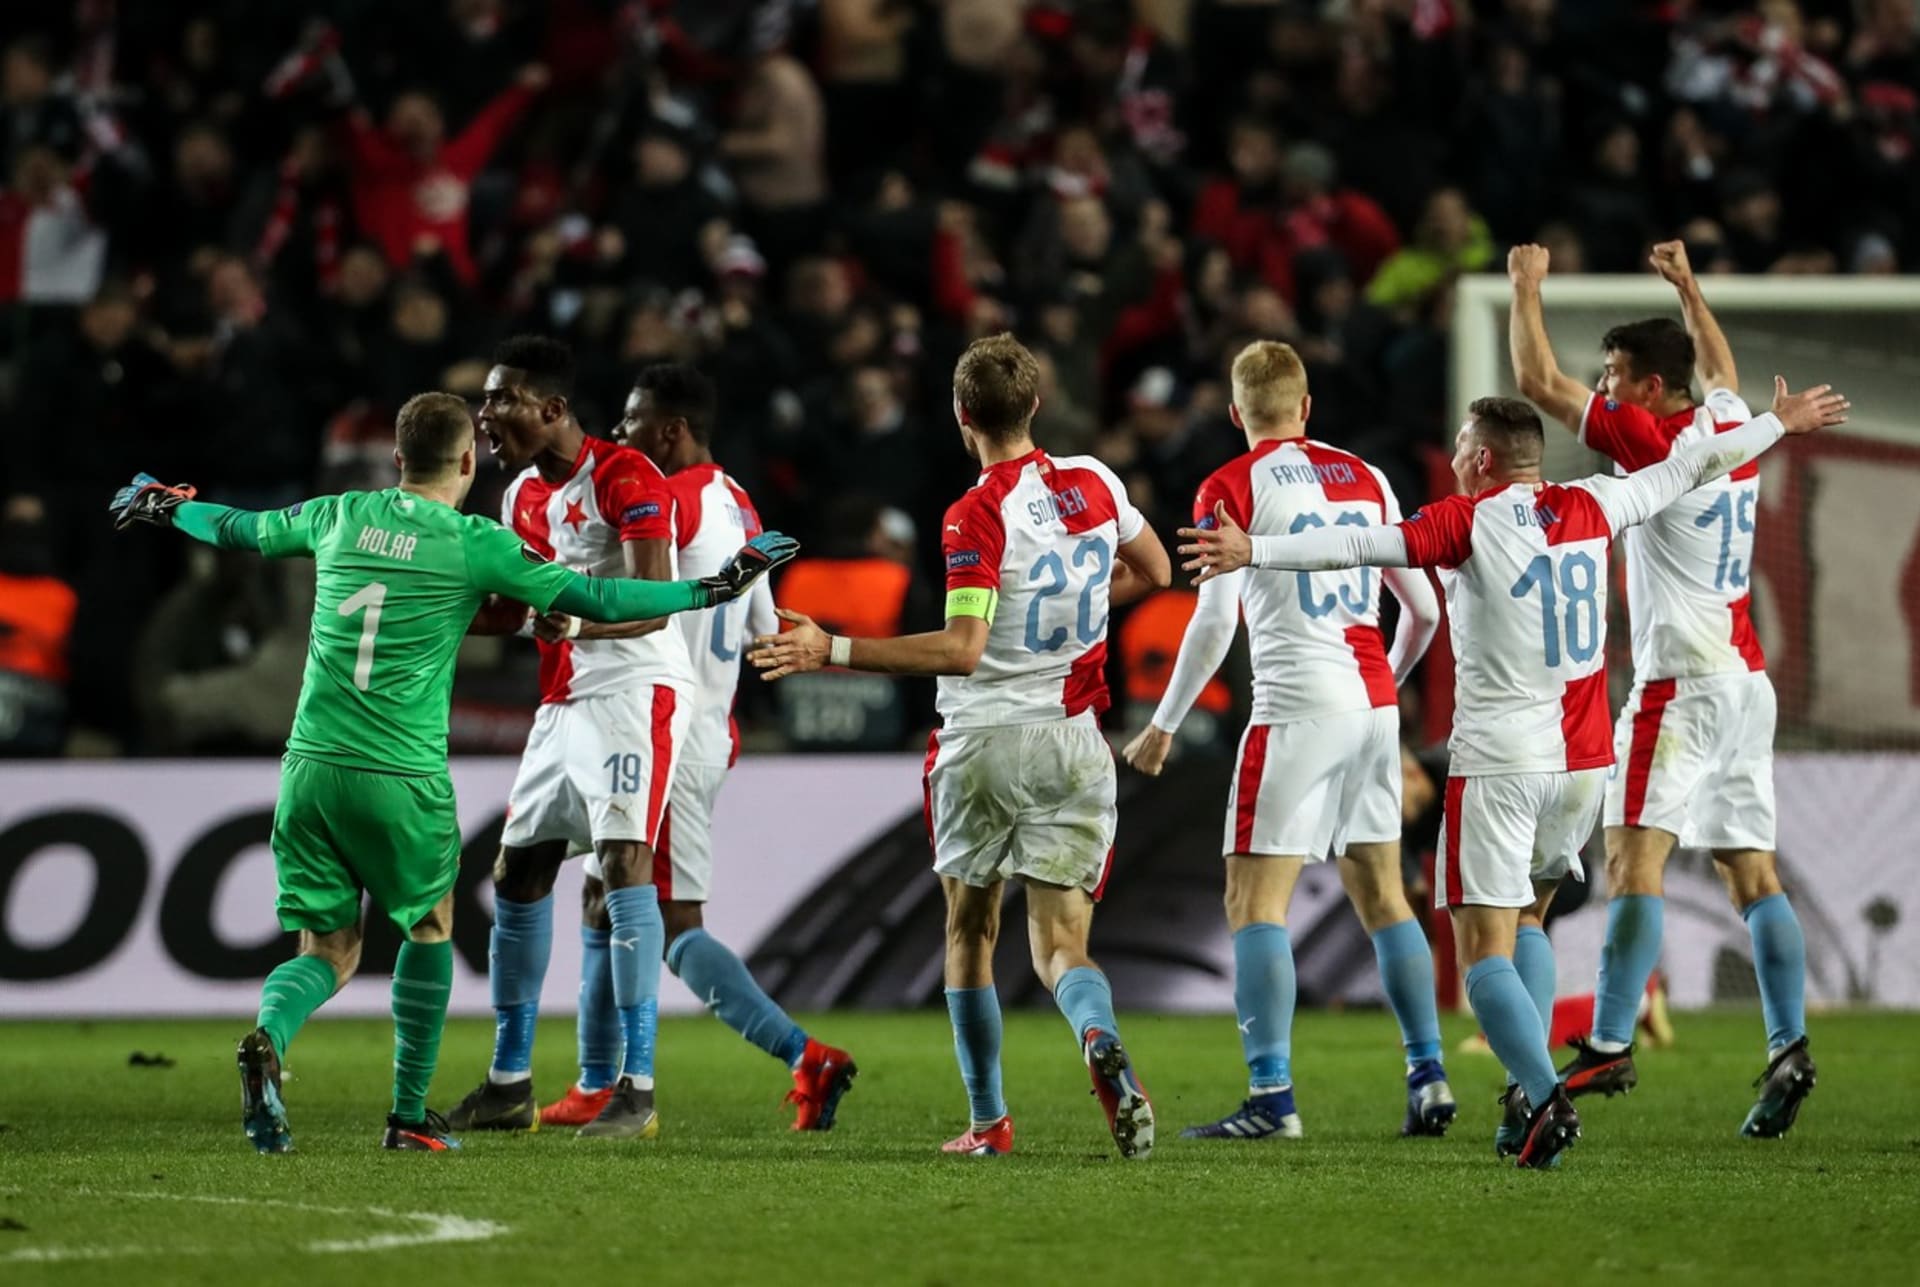 V roce 2019 dokráčela Slavia až do čtvrtfinále Evropské ligy. Povede se jí tento úspěch zopakovat?